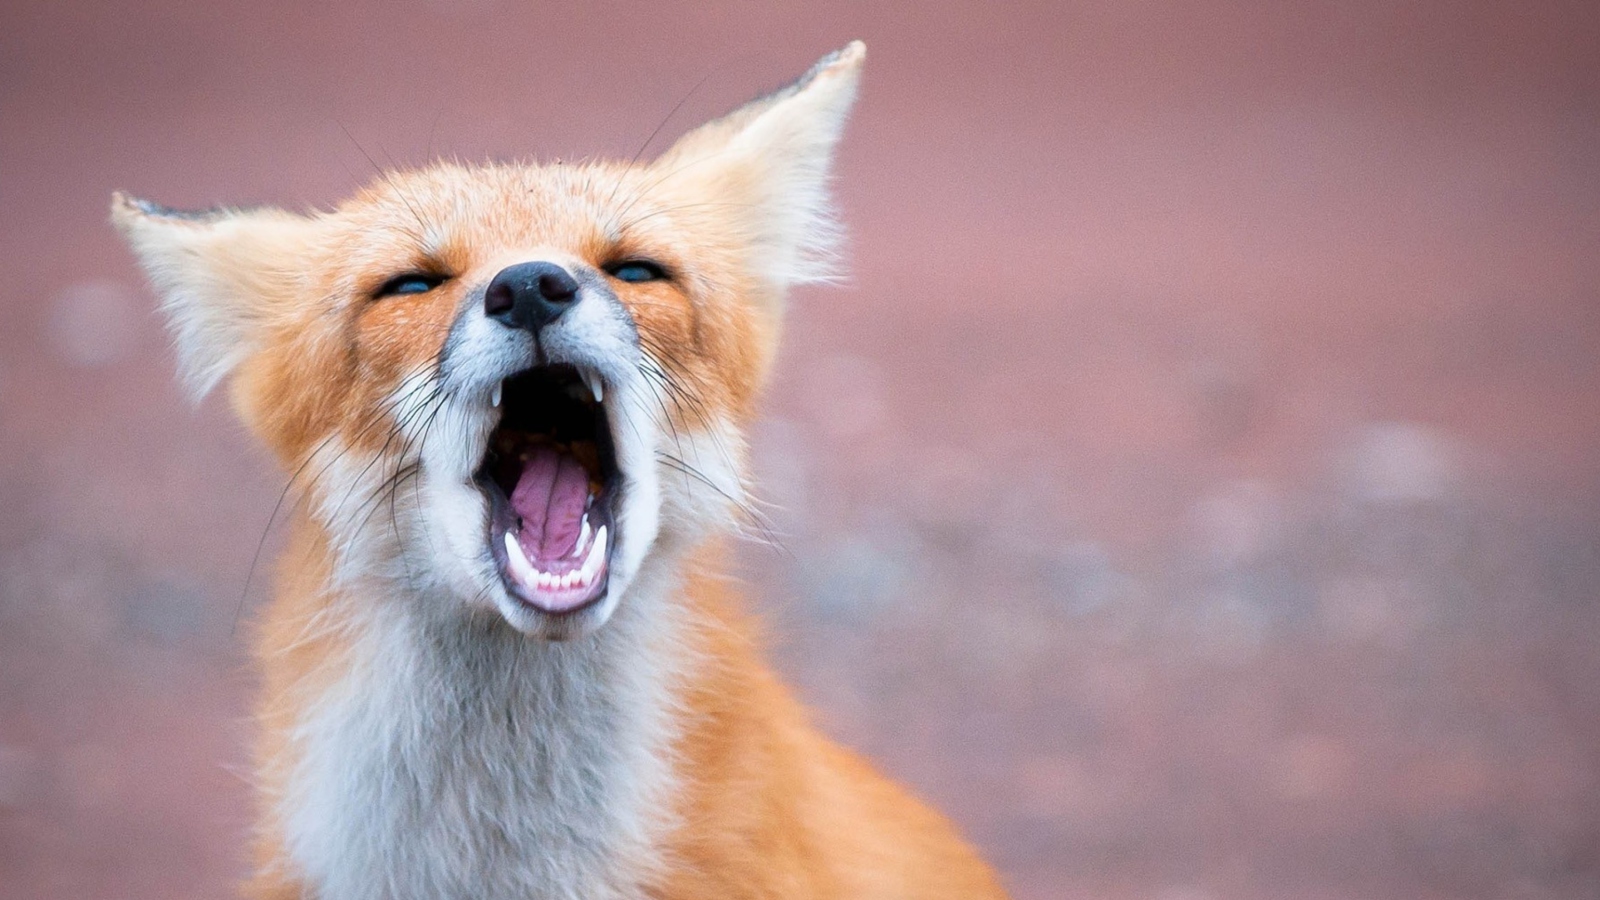 Yawning Fox wallpaper 1600x900